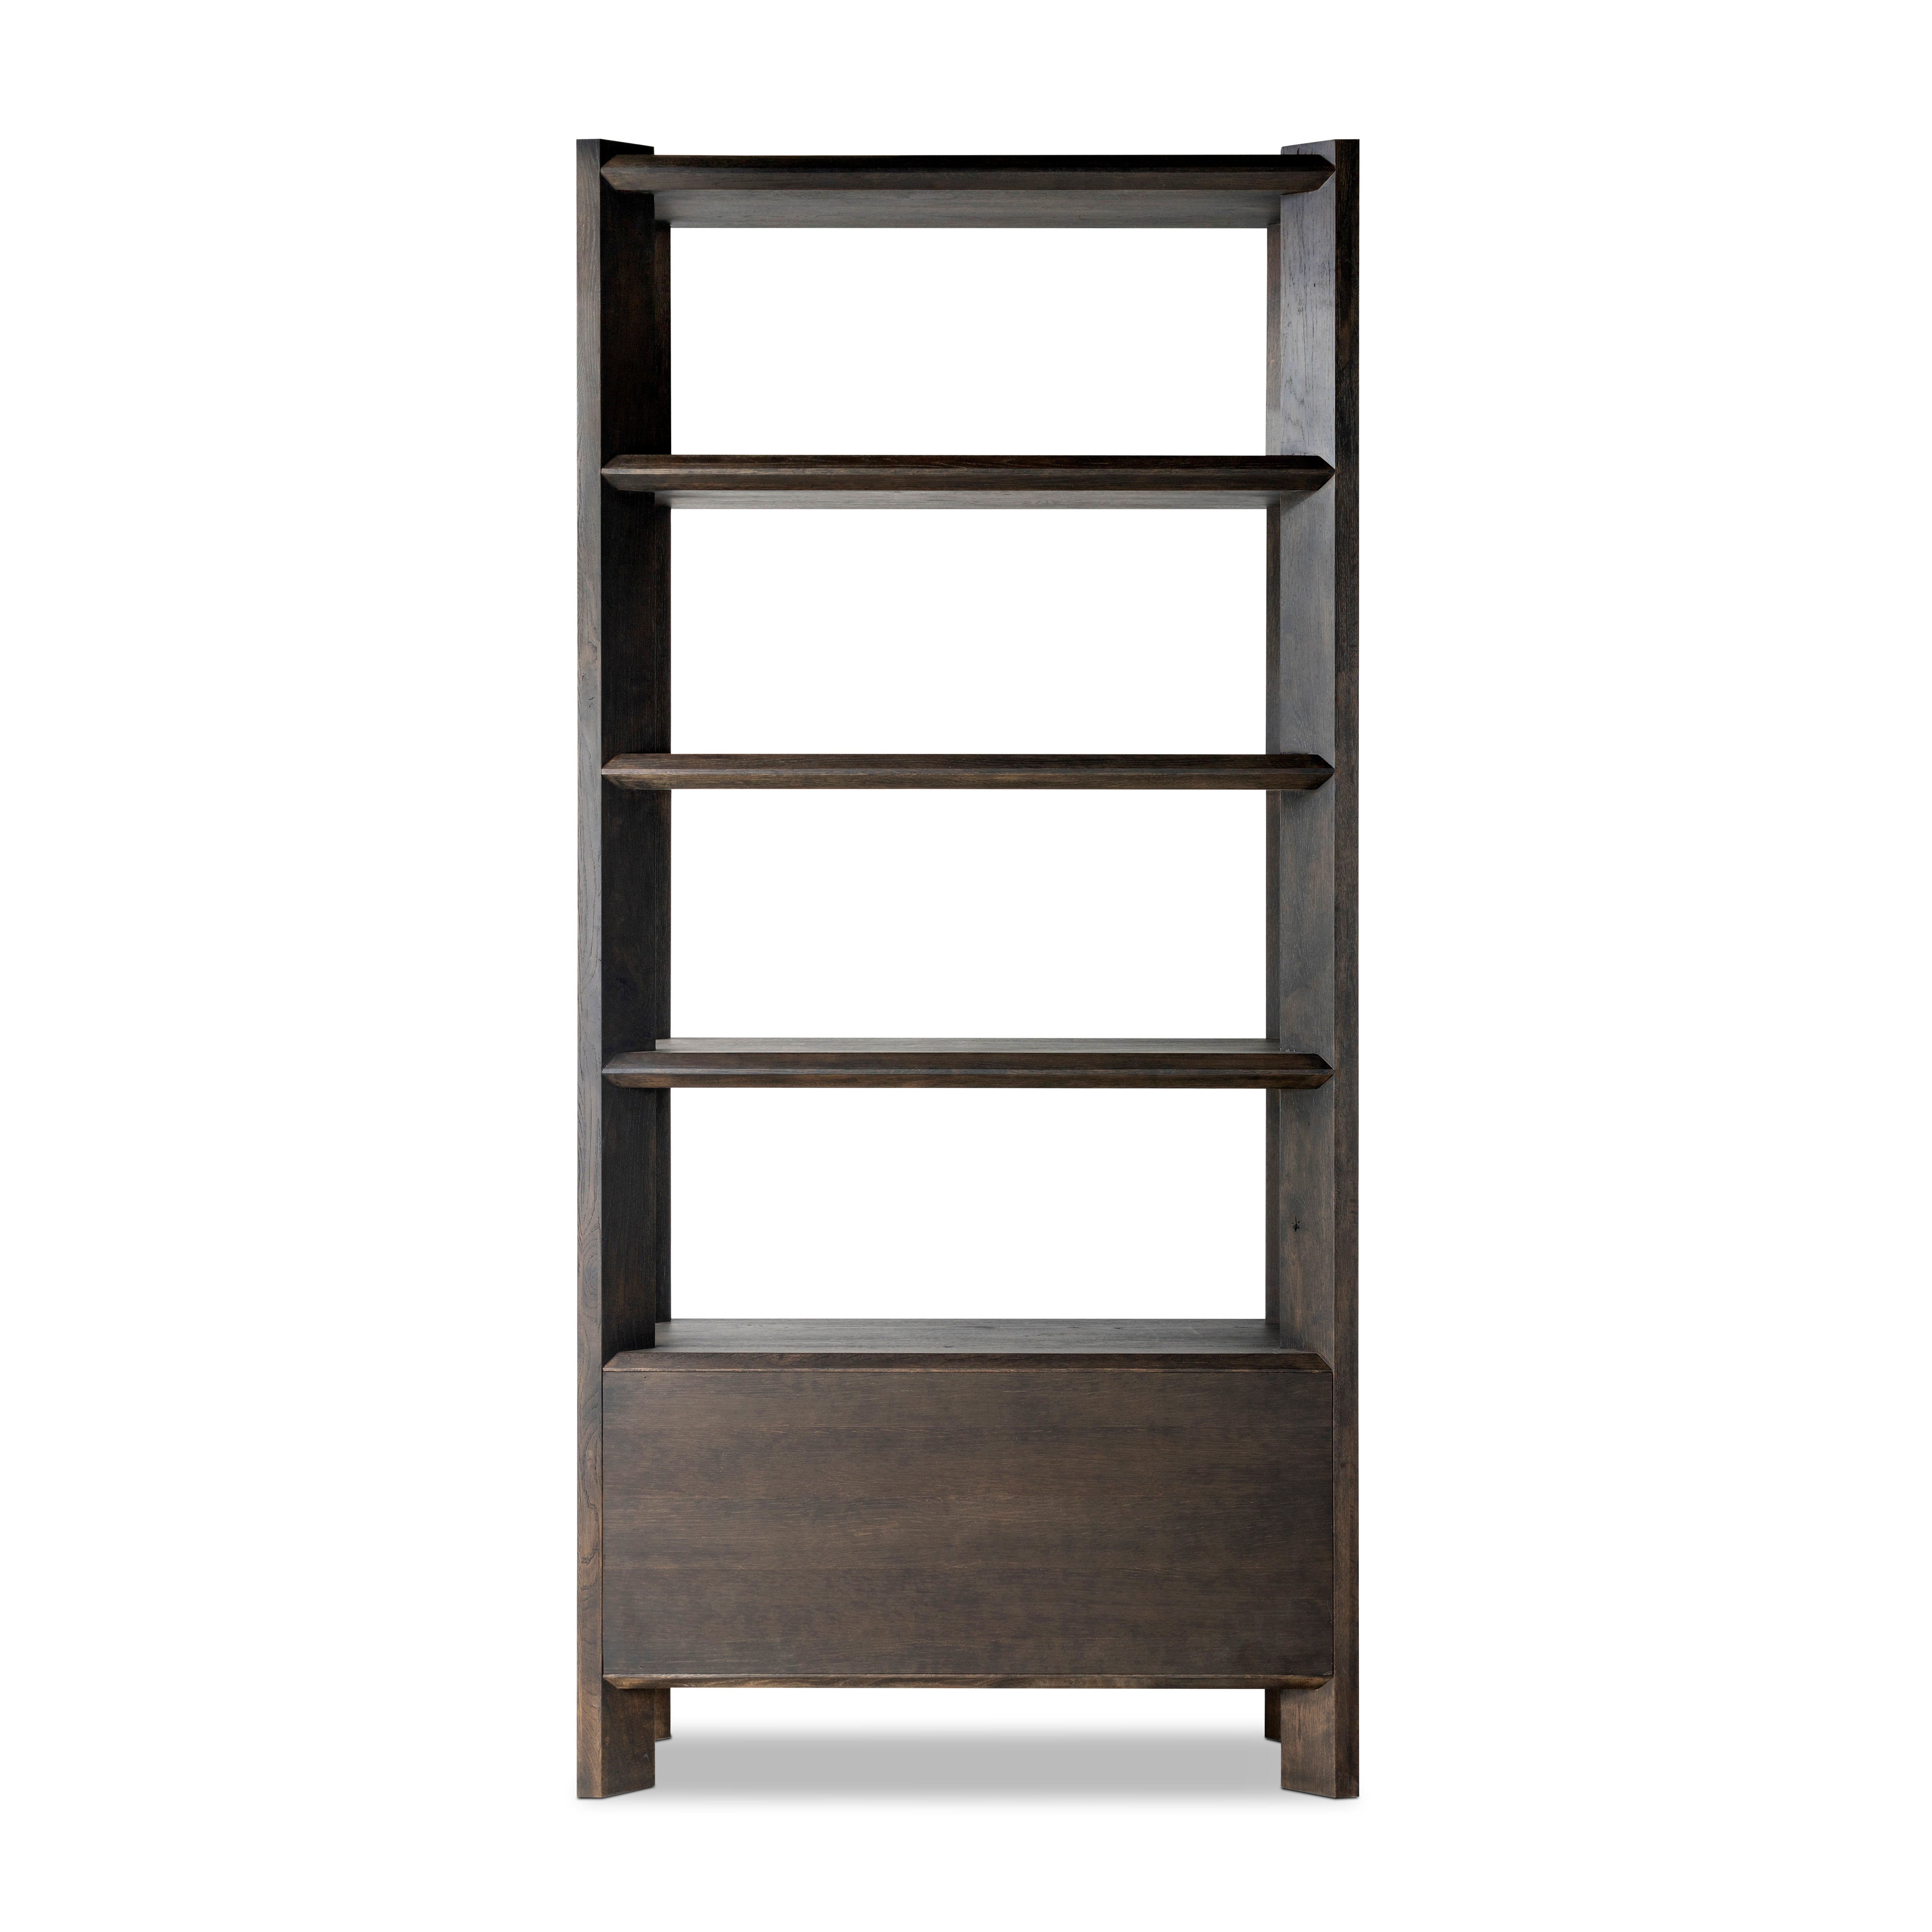 Orwin Bookshelf-Smoked Black Oak - StyleMeGHD - 